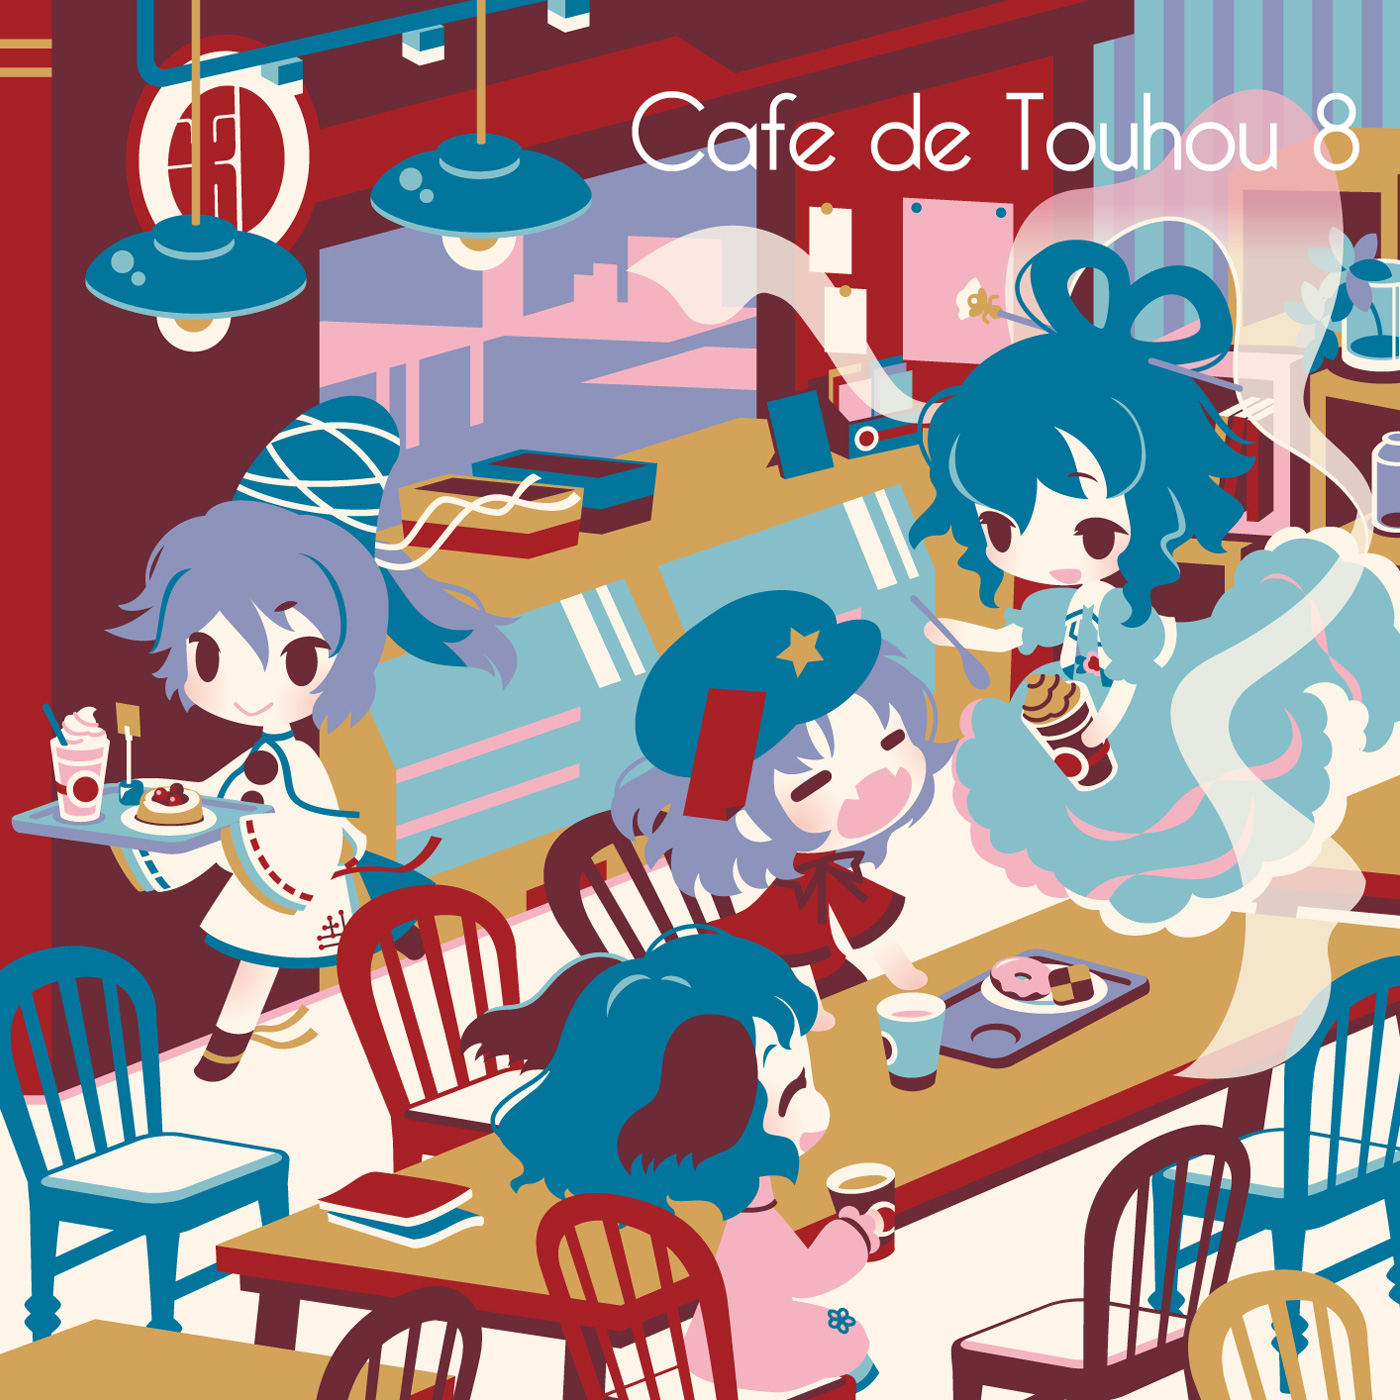 [自己動手豐衣足食](DDBY)Cafe de Touhou 8